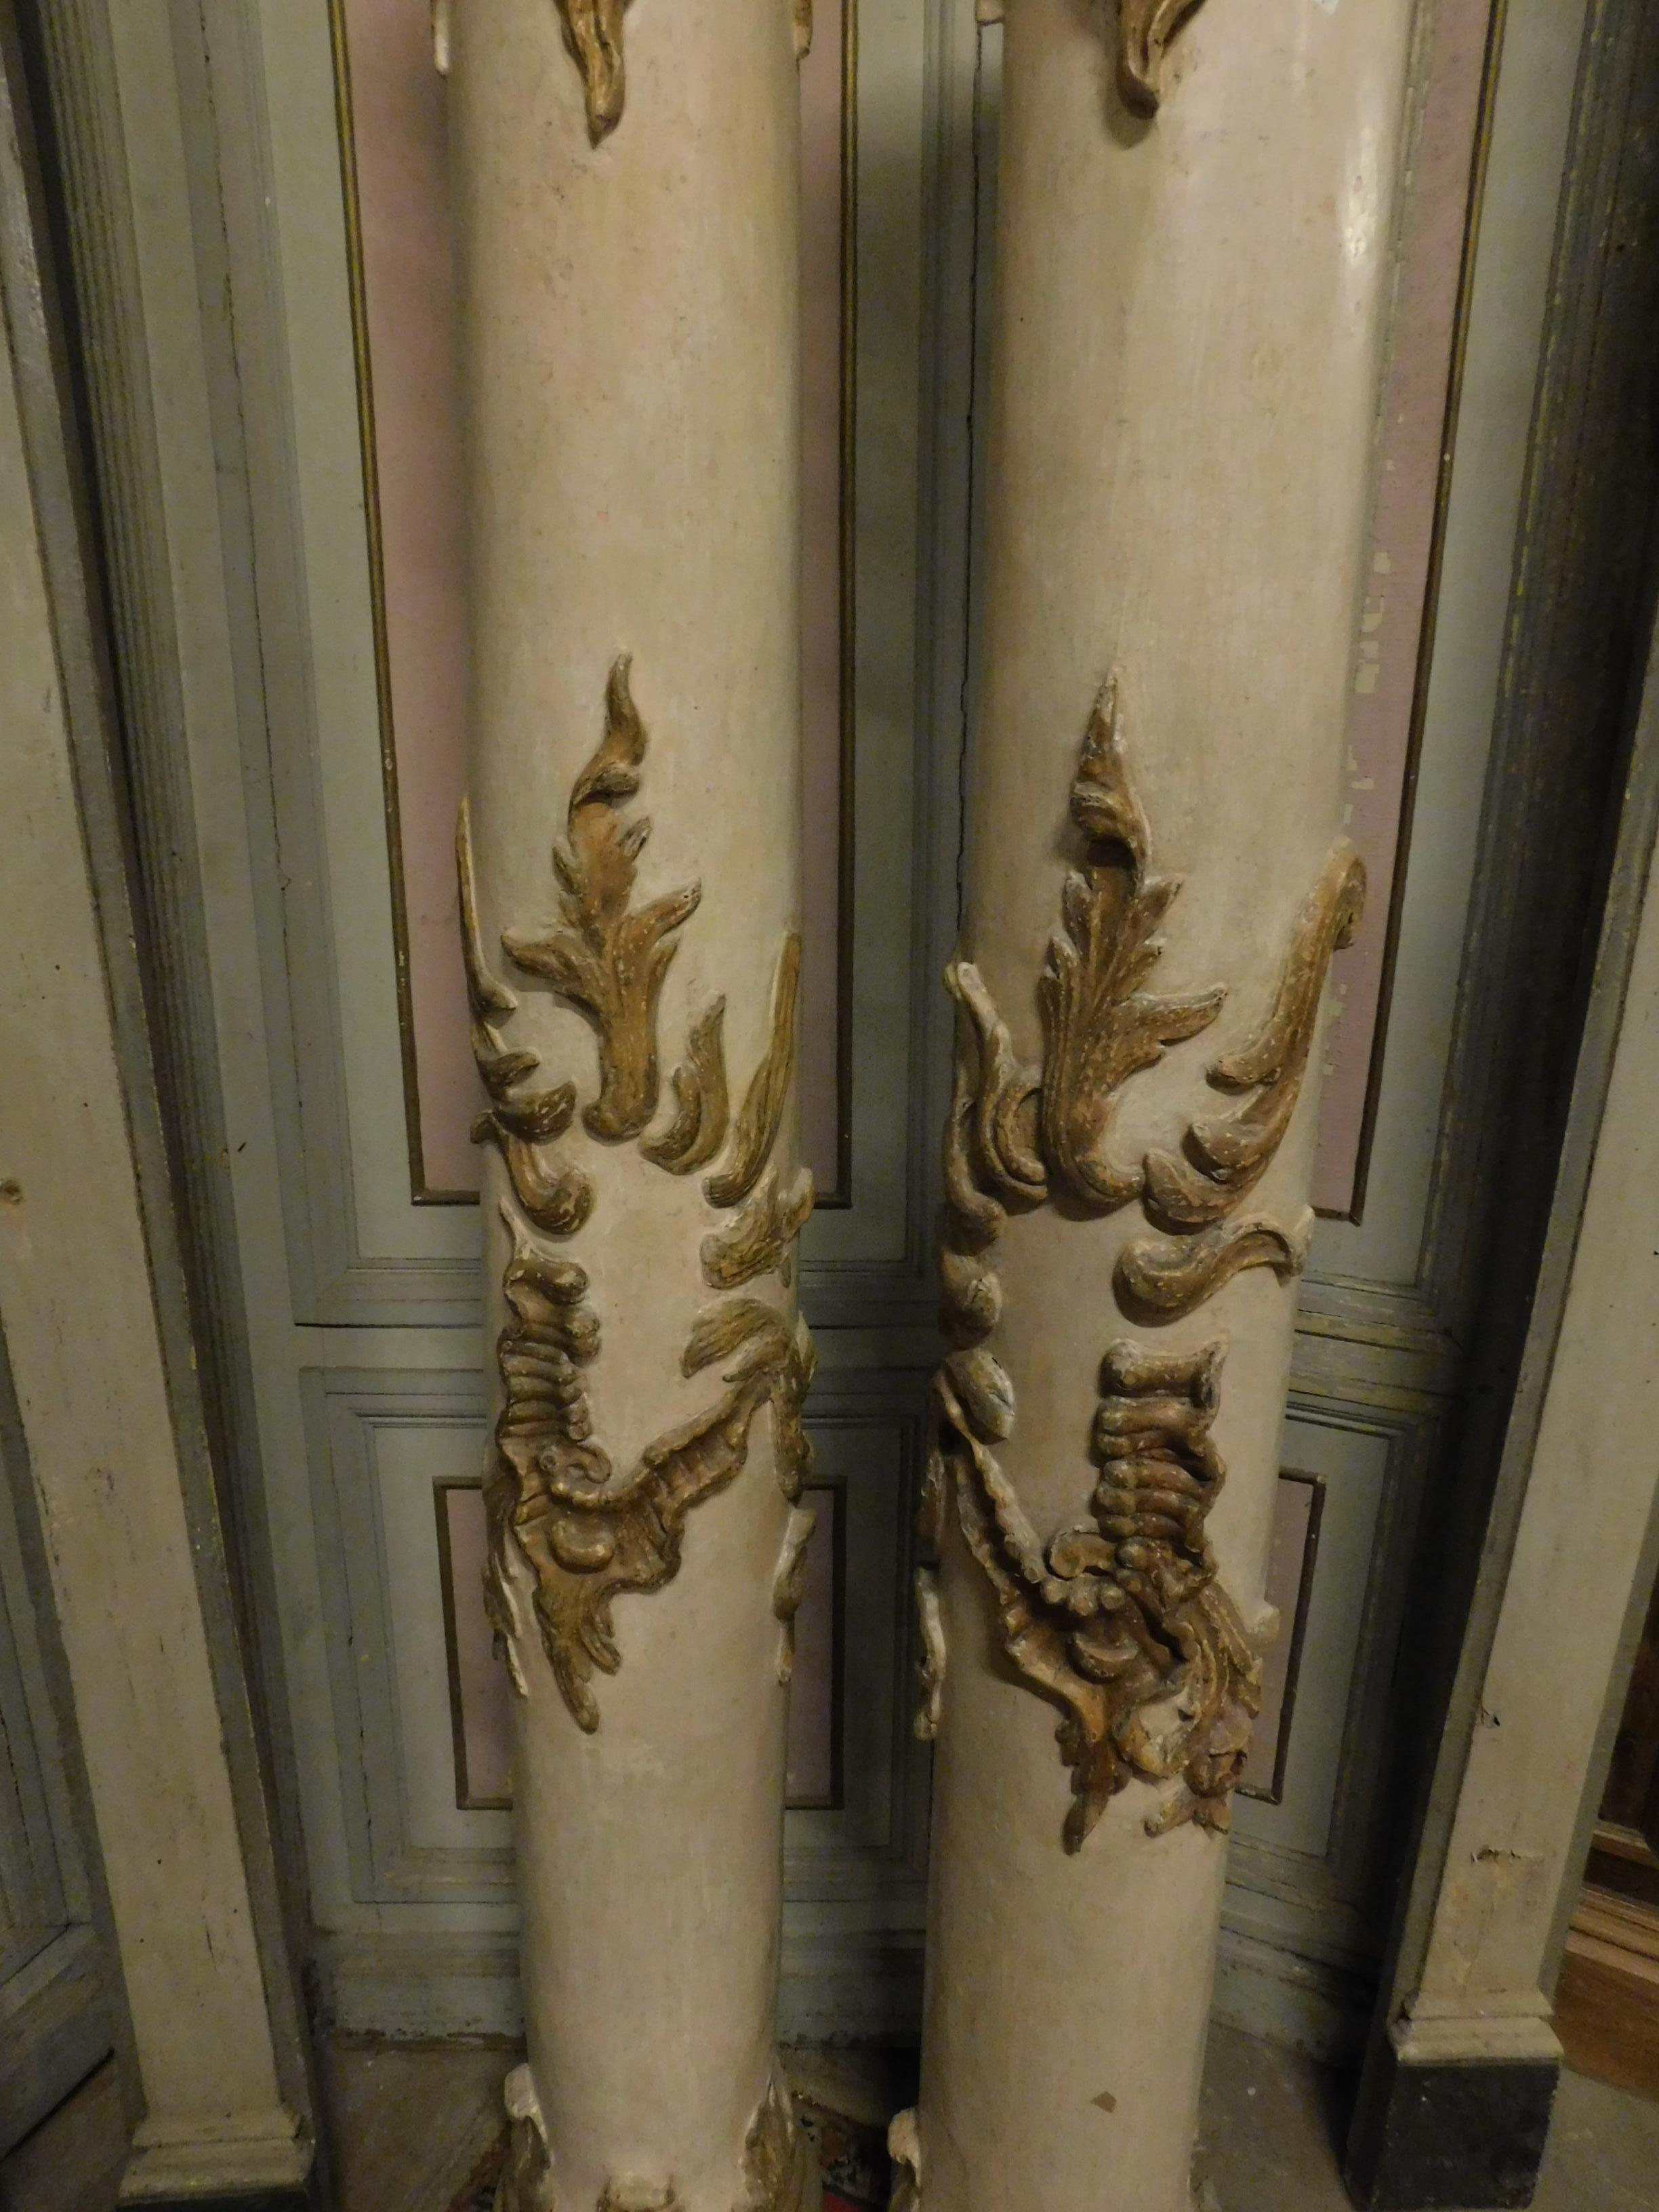 Antique pair of wooden columns lacquered with gilded sculptures, 18th century
Naples origin, H cm 183 x 26cm in diameter.